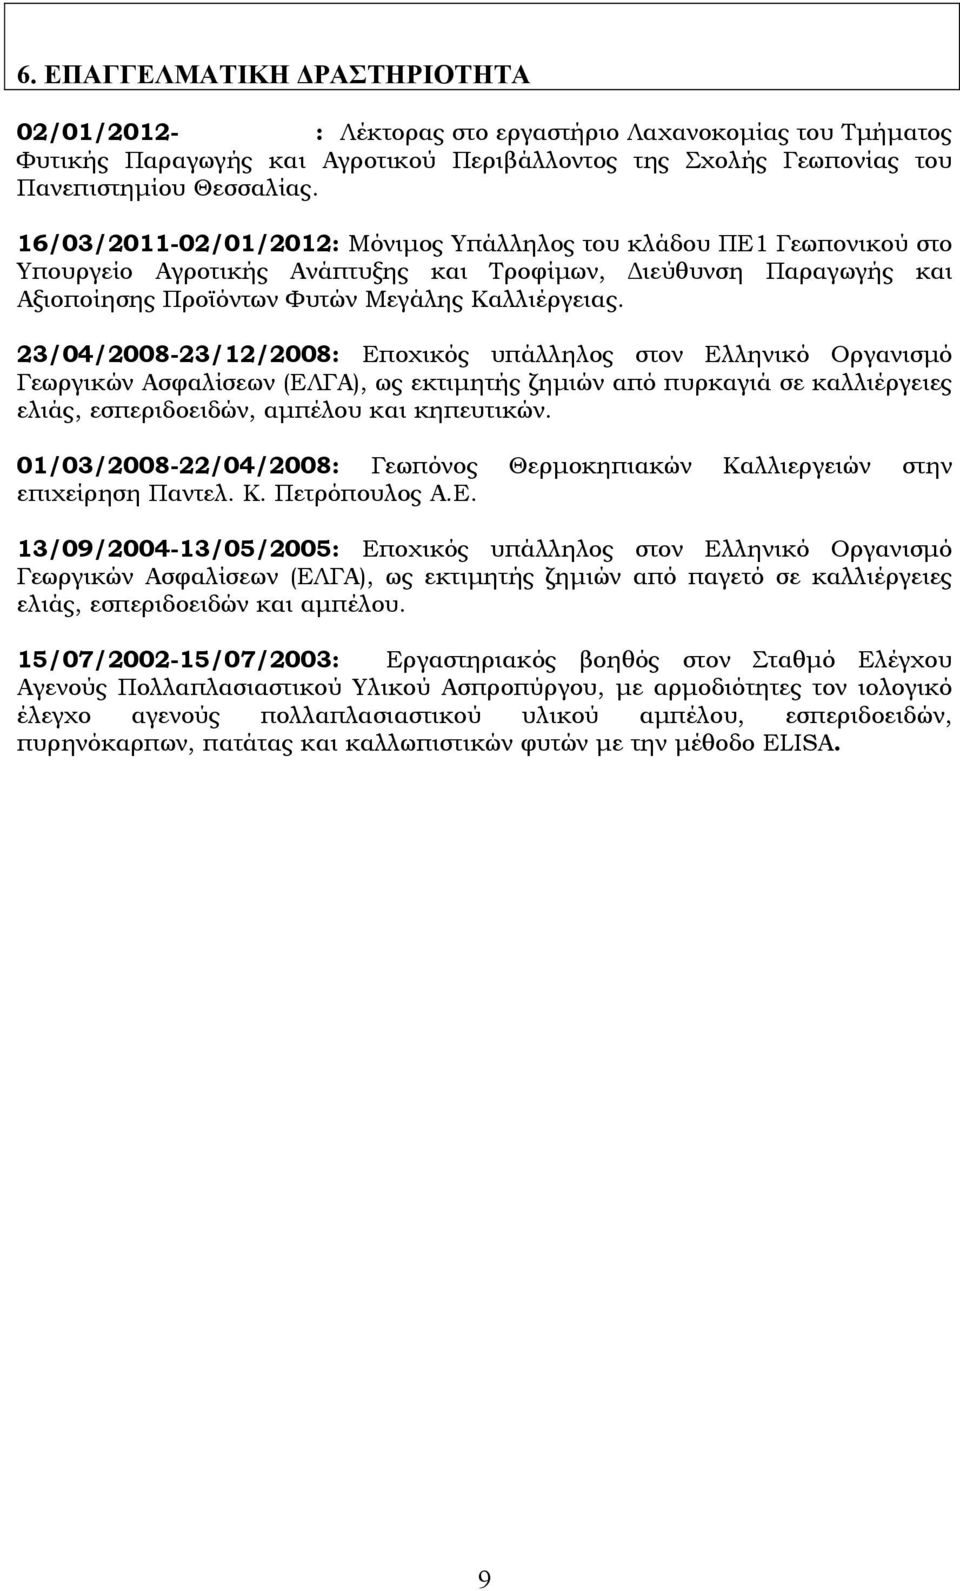 23/04/2008-23/12/2008: Εποχικός υπάλληλος στον Ελληνικό Οργανισμό Γεωργικών Ασφαλίσεων (ΕΛΓΑ), ως εκτιμητής ζημιών από πυρκαγιά σε καλλιέργειες ελιάς, εσπεριδοειδών, αμπέλου και κηπευτικών.